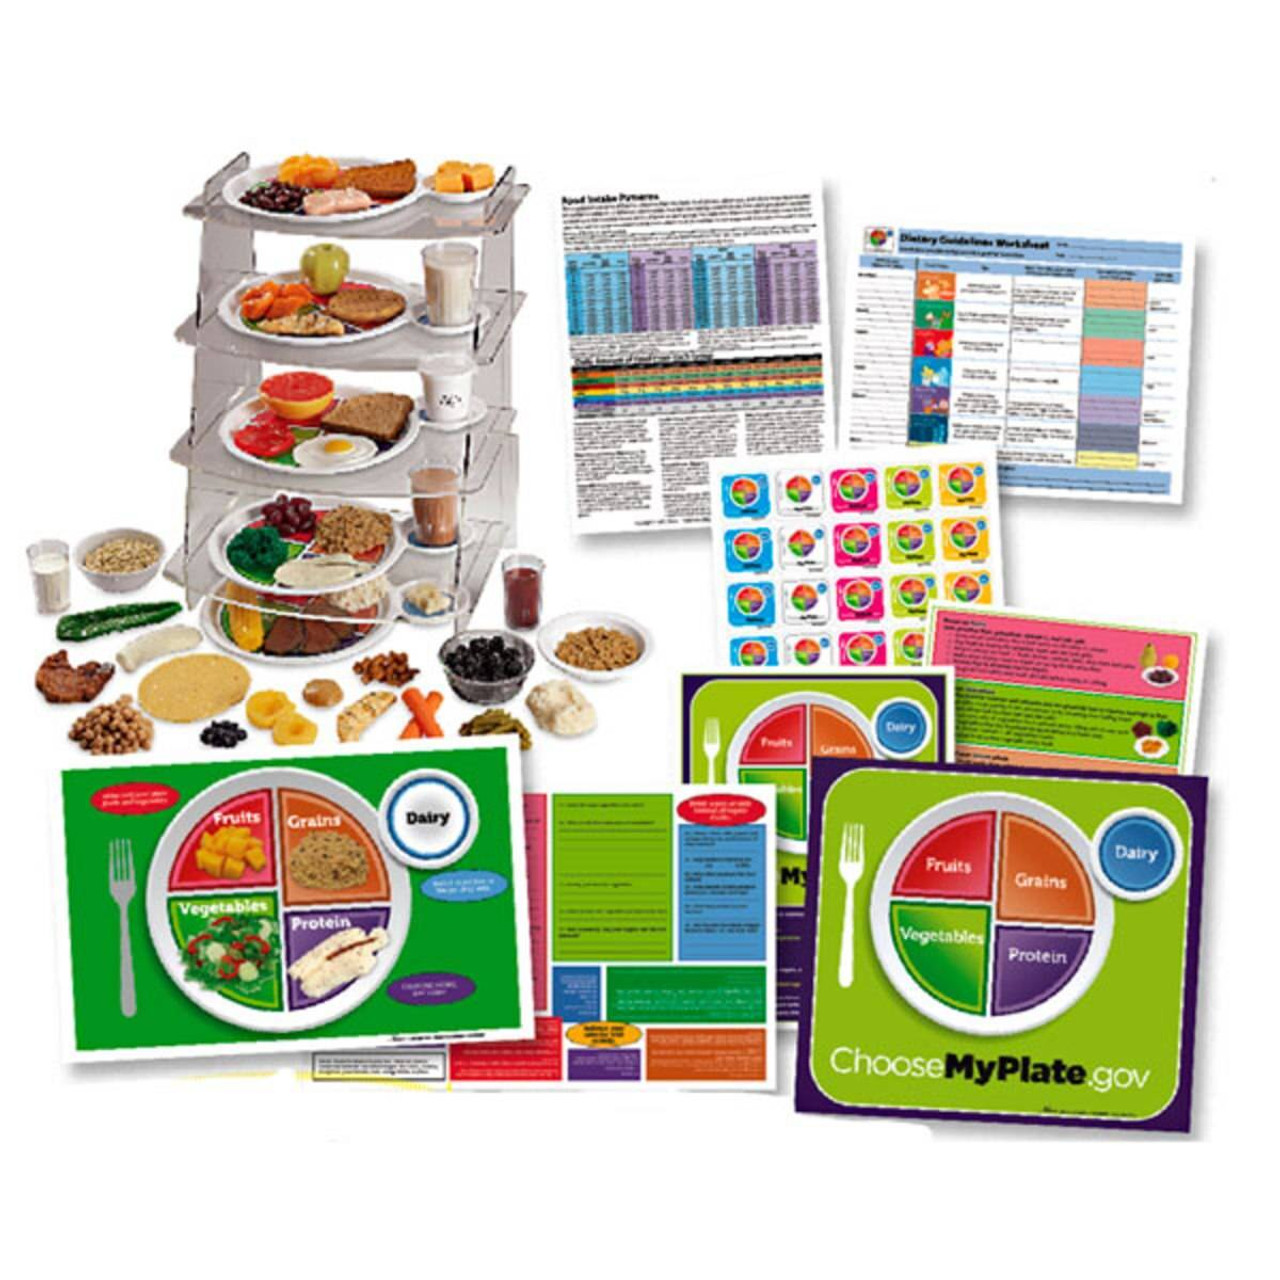 MyPlate Plexiglas Display & Food Model Package